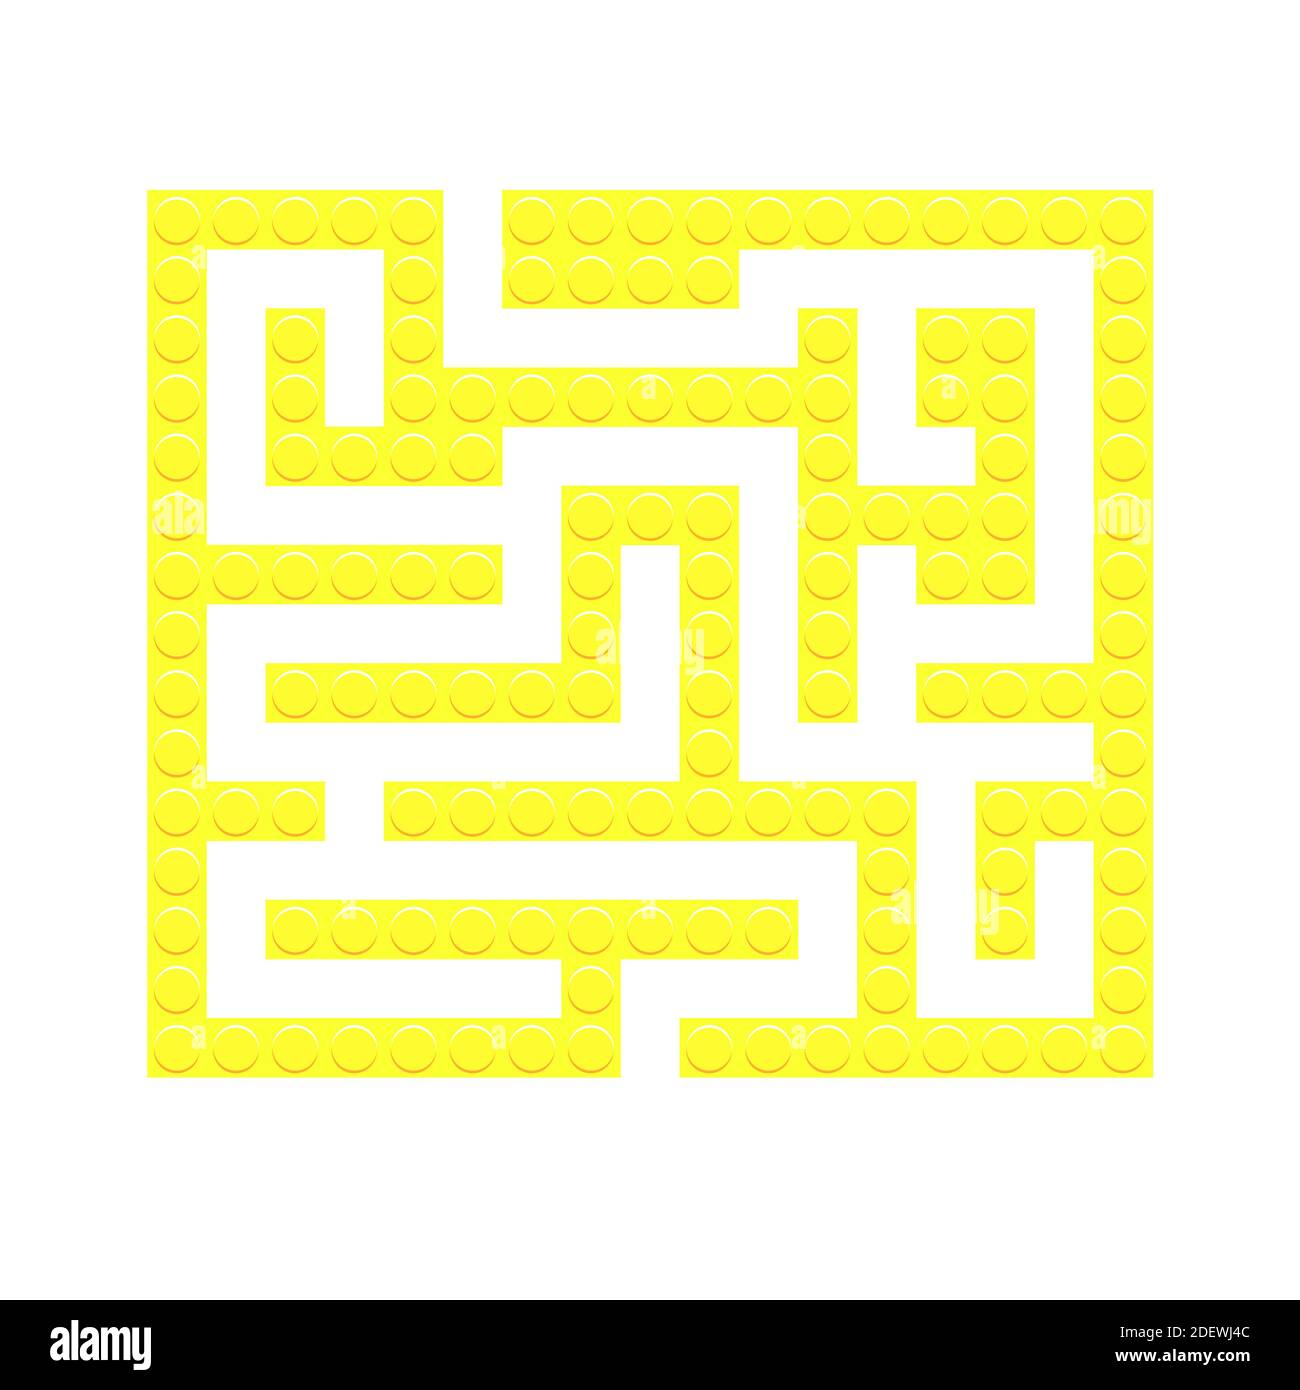 Labirinto quadrato giallo mattoni gioco labirinto giocattolo per i bambini. Logica labirintica. Un ingresso e un modo giusto per andare. Immagine piatta vettoriale Illustrazione Vettoriale